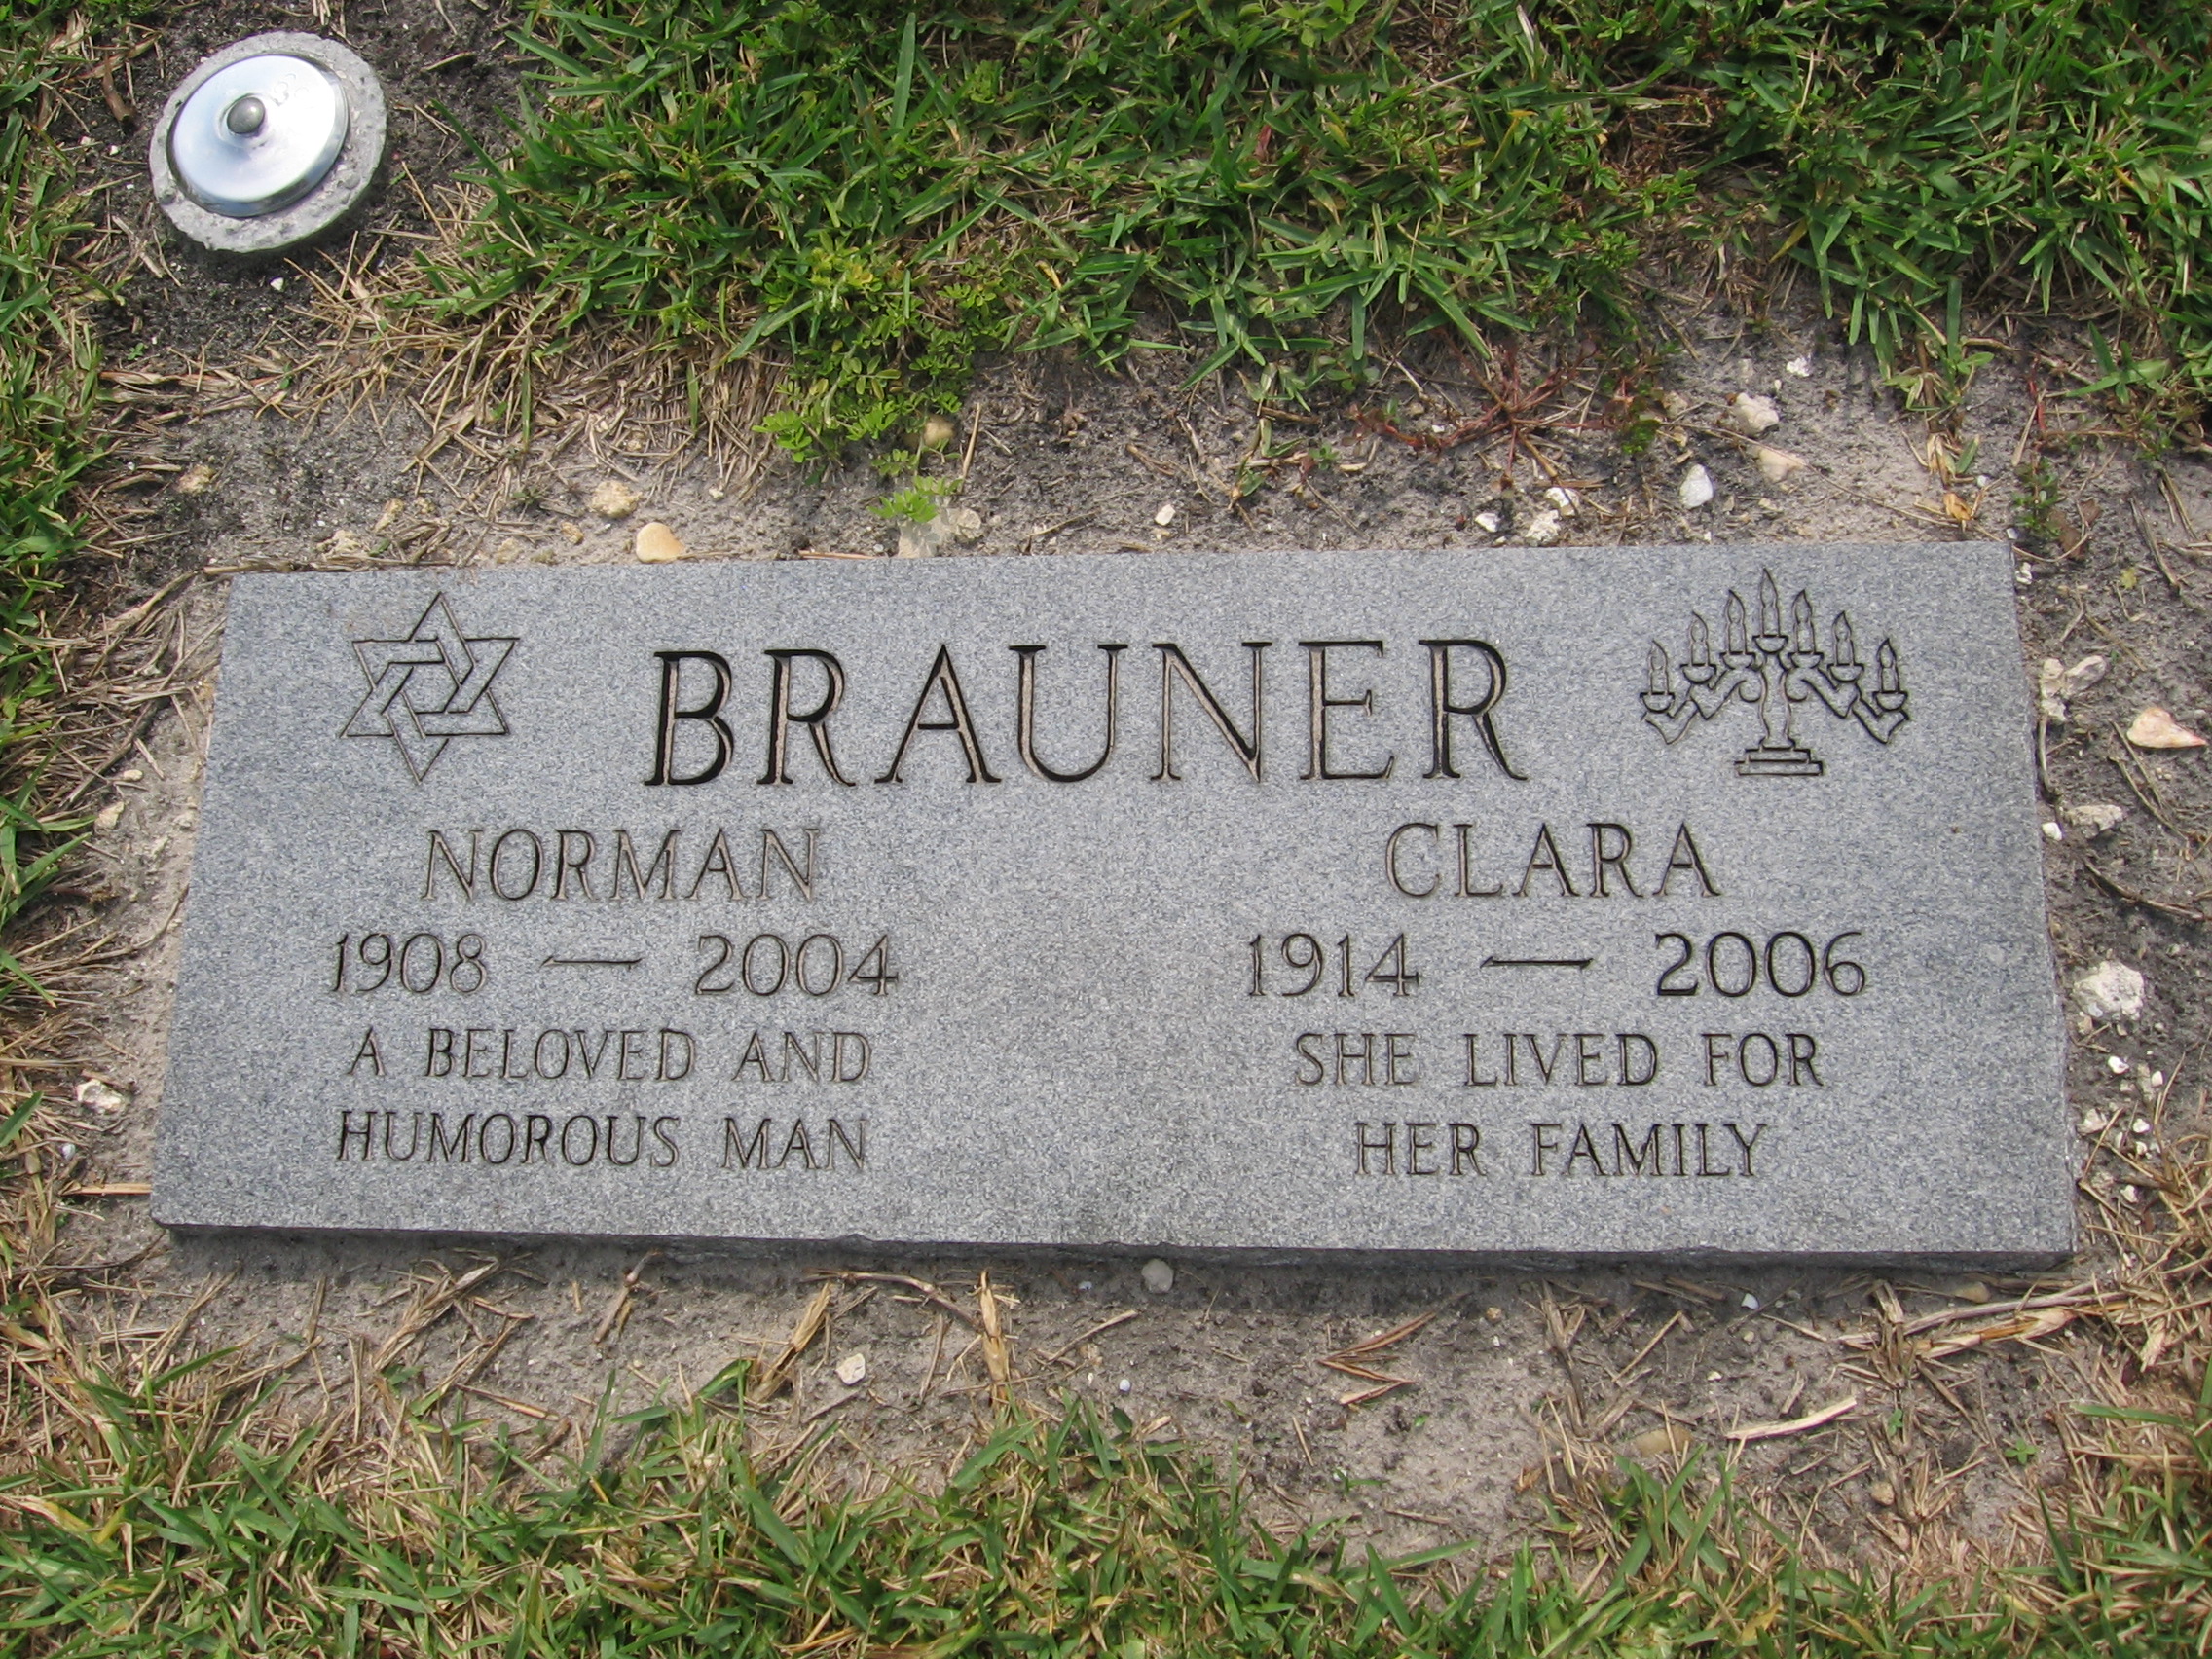 Norman Brauner